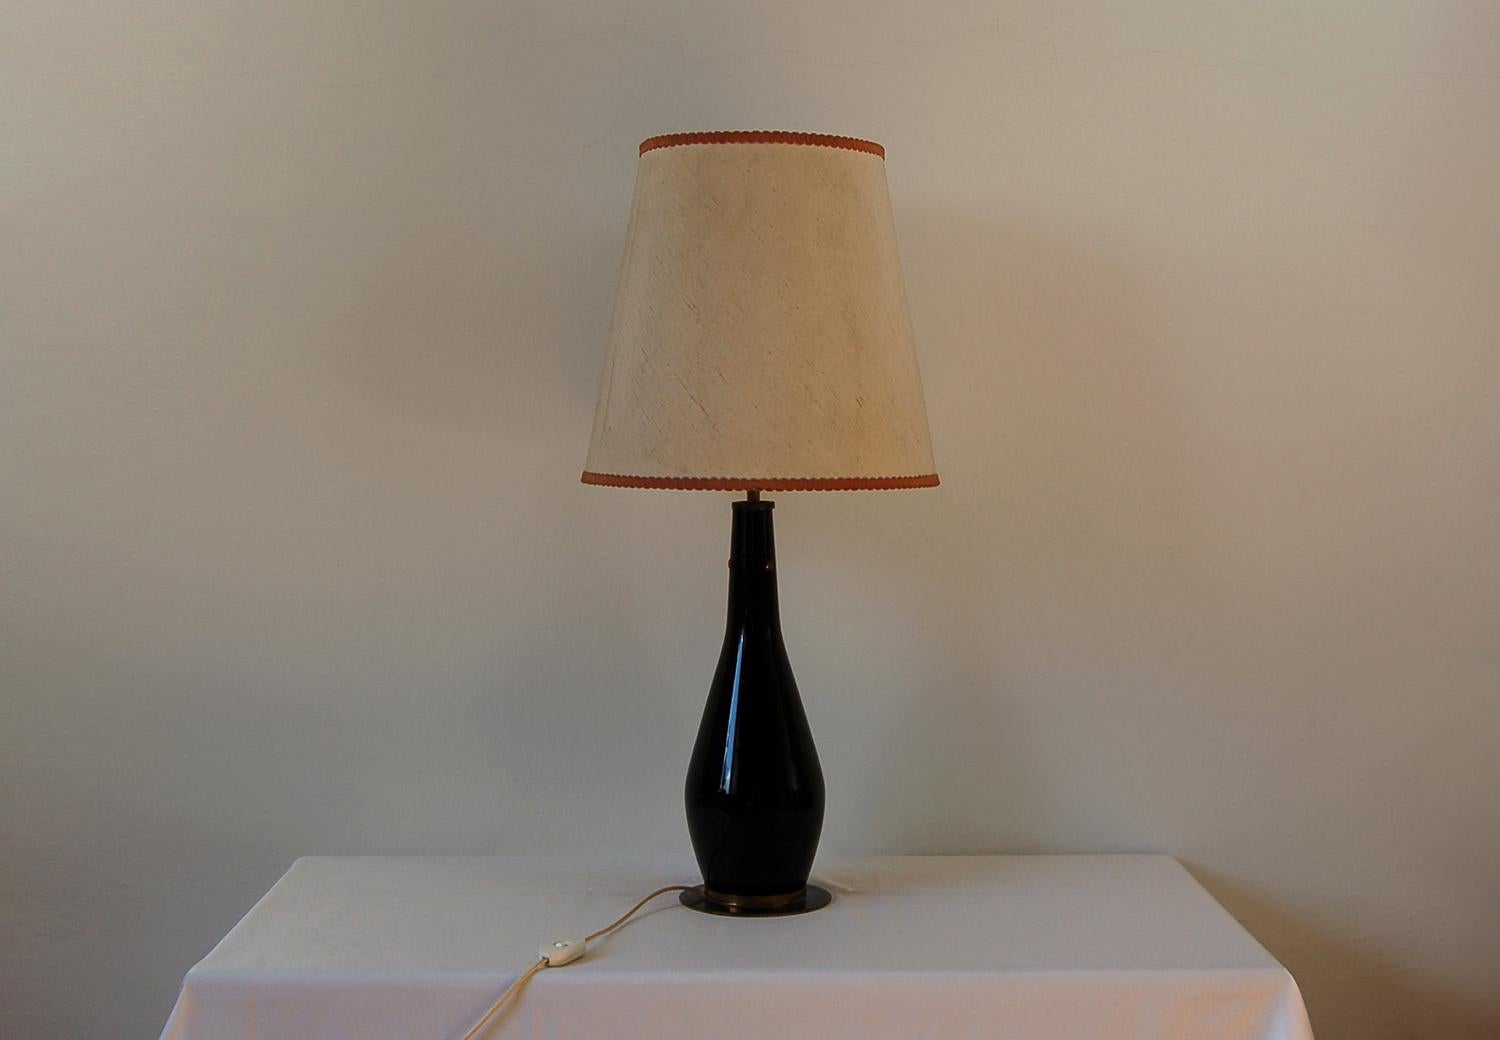 Lampe de table midcentury avec structure en verre noir et laiton et abat-jour en tissu. Produit par la société italienne Stilnovo dans les années 1950.

Le logo du fabricant est apposé sur l'interrupteur.

Cette lampe peut être équipée d'une